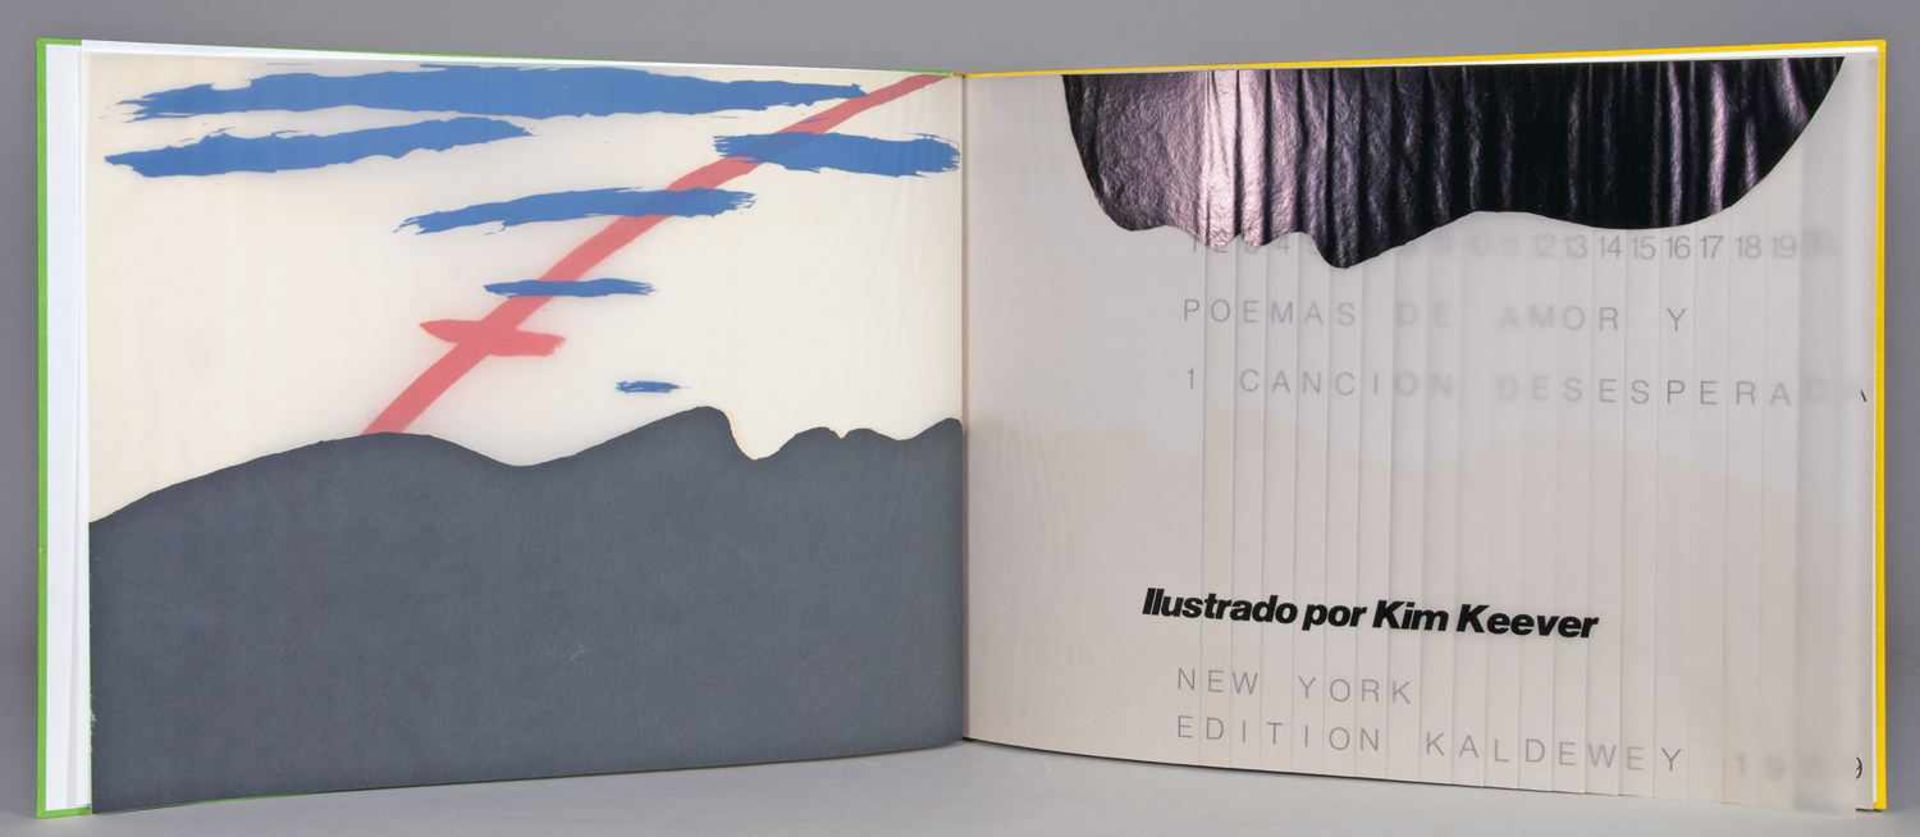 Kaldewey Press - Pablo Neruda. 20 Poemas de Amor y 1 Canción desperada. Ilustrado por Kim Keever.